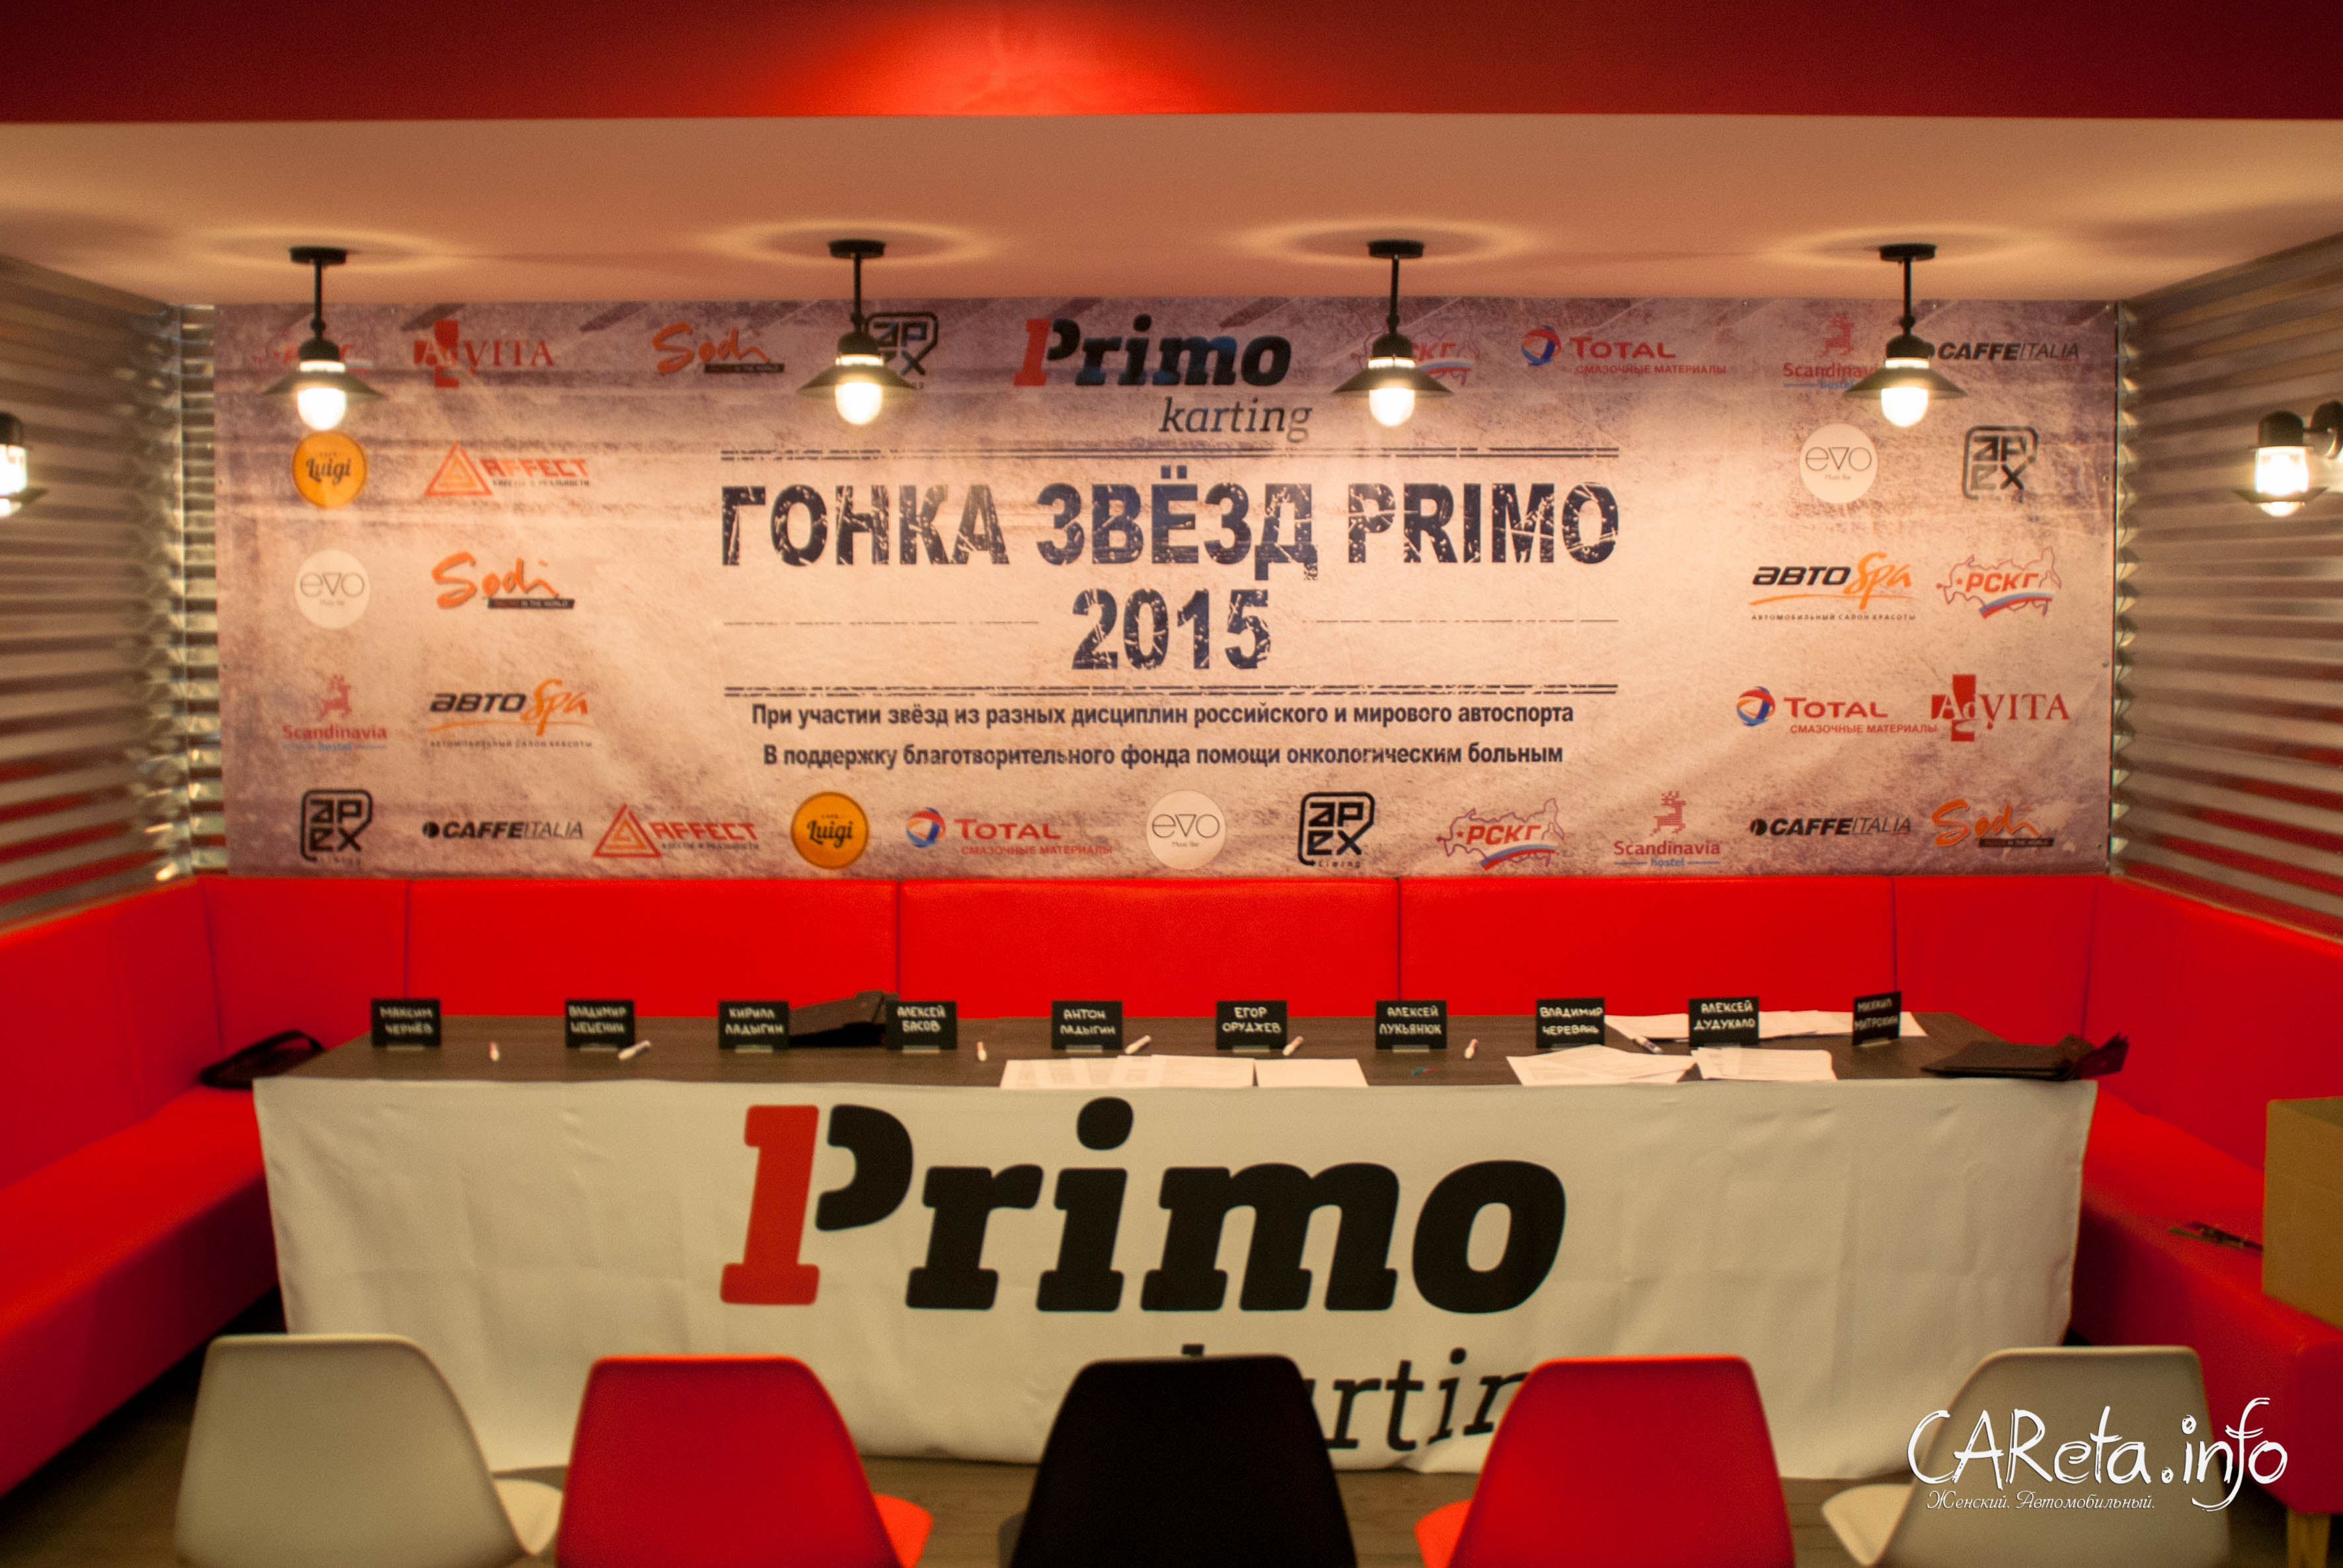 "Все флаги в гости будут к нам...": Гонка Звезд Primo-2015